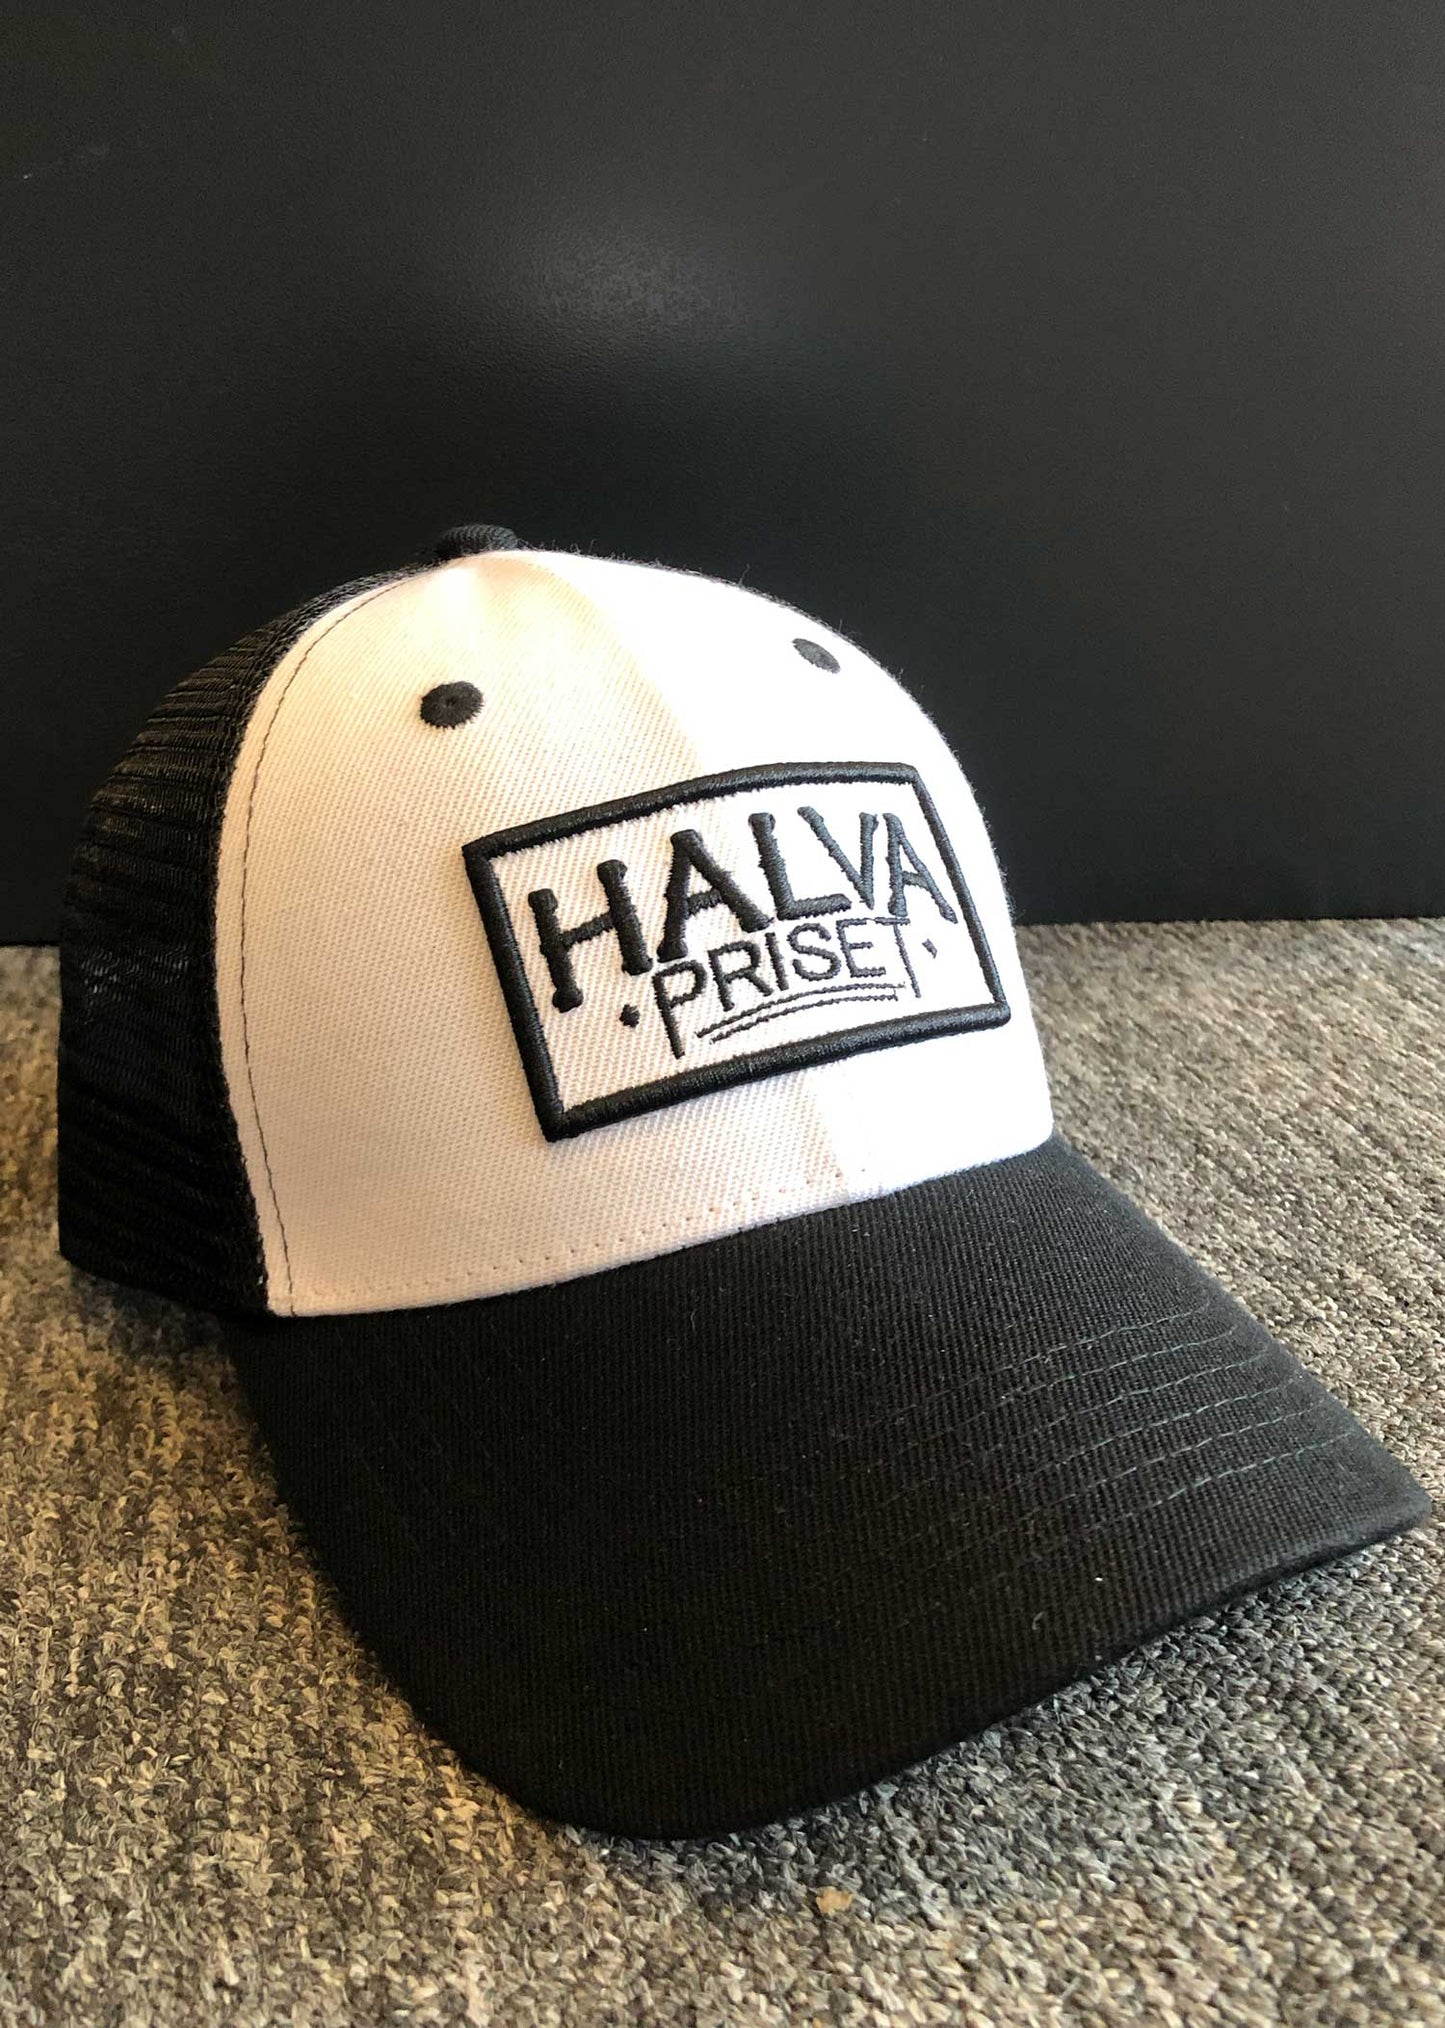 Halva Priset - Caps Trucker - Sort/Hvit